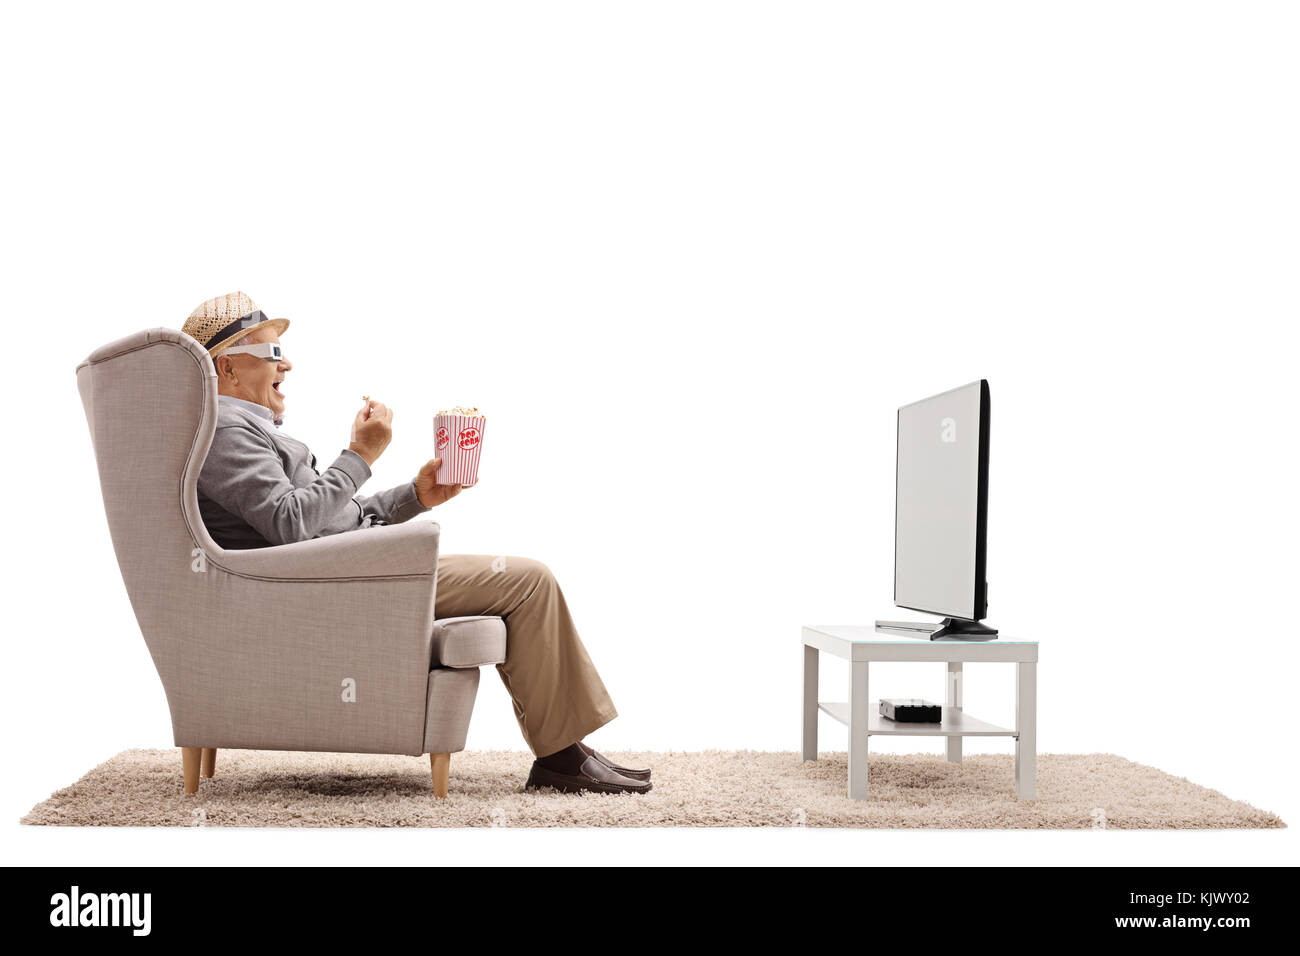 Homme mature avec des lunettes 3-d assis dans un fauteuil eating popcorn et regarder la télévision isolé sur fond blanc Banque D'Images